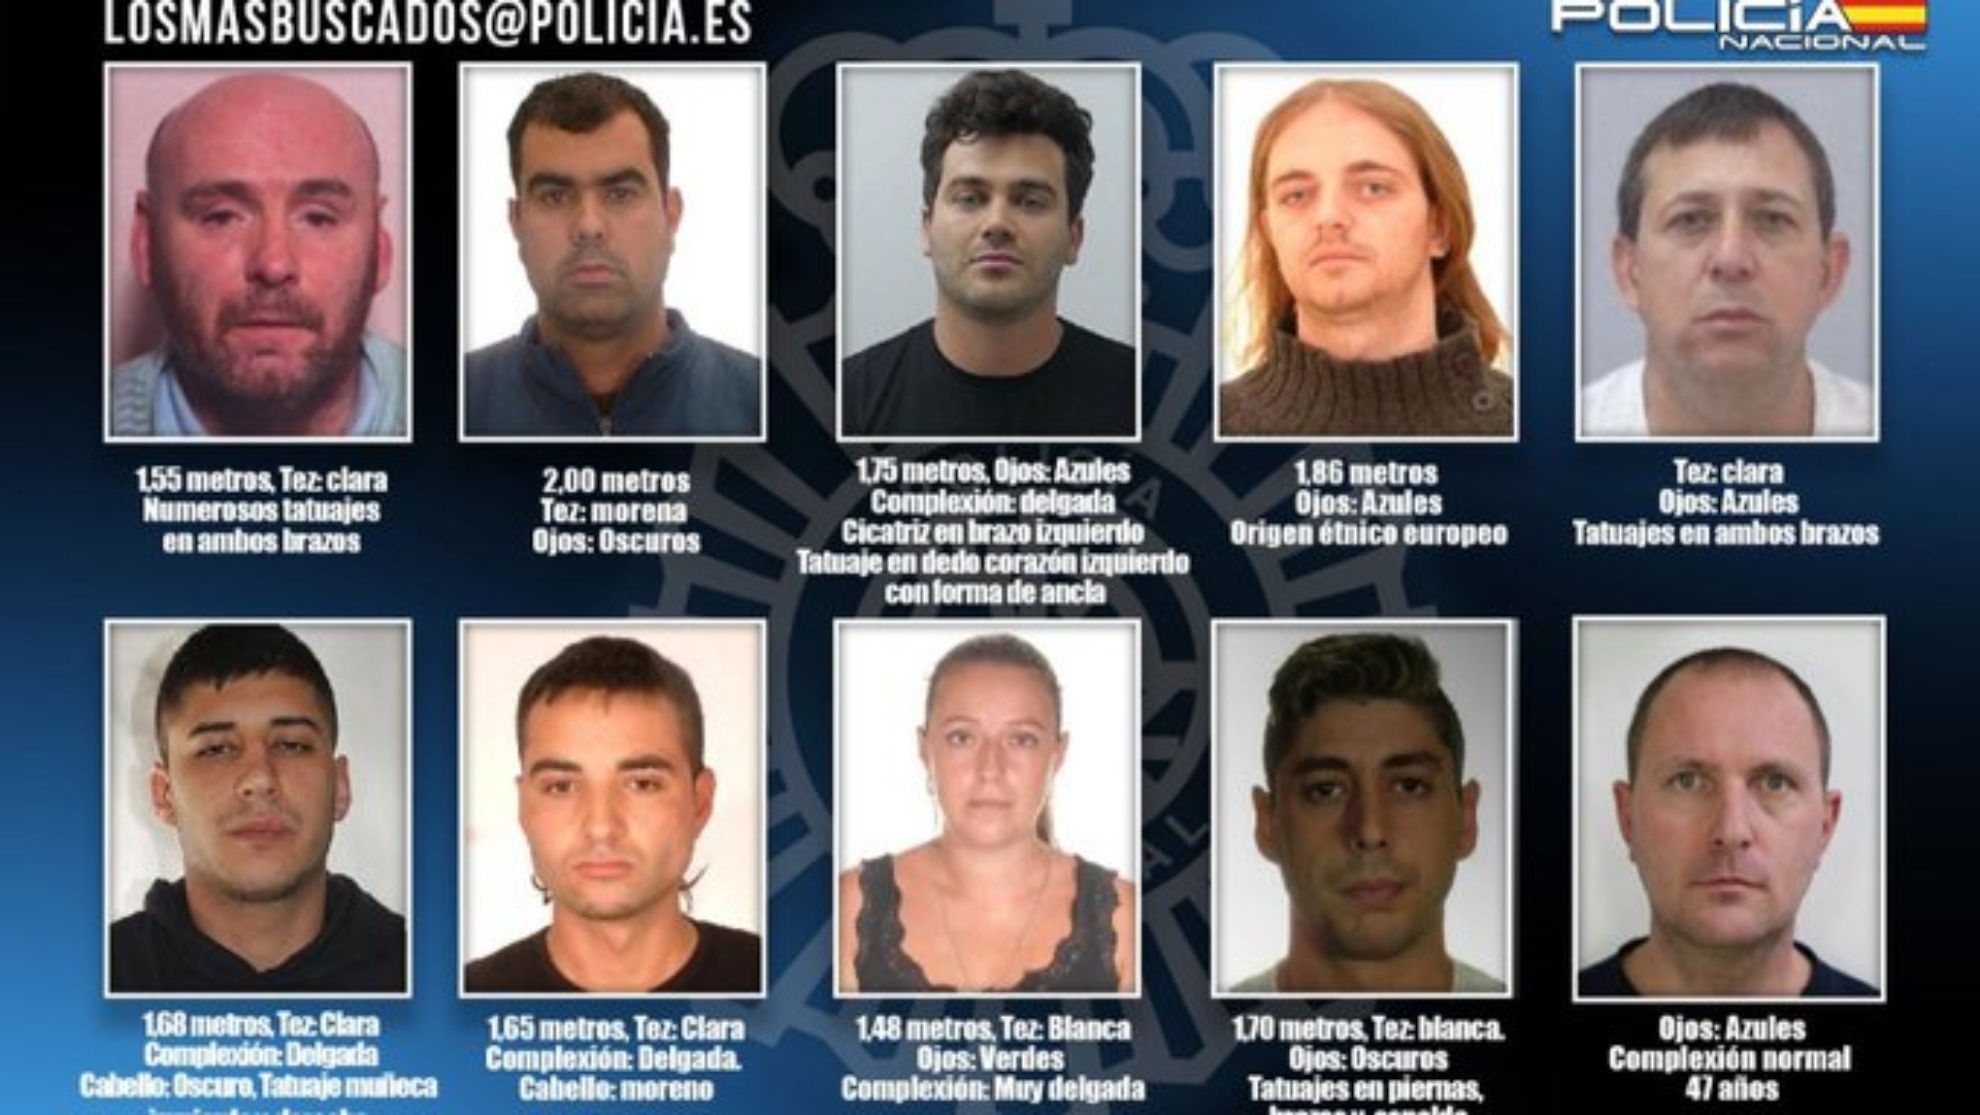 La Polica Nacional pide colaboracin ciudadana para encontrar a los diez fugitivos ms buscados.